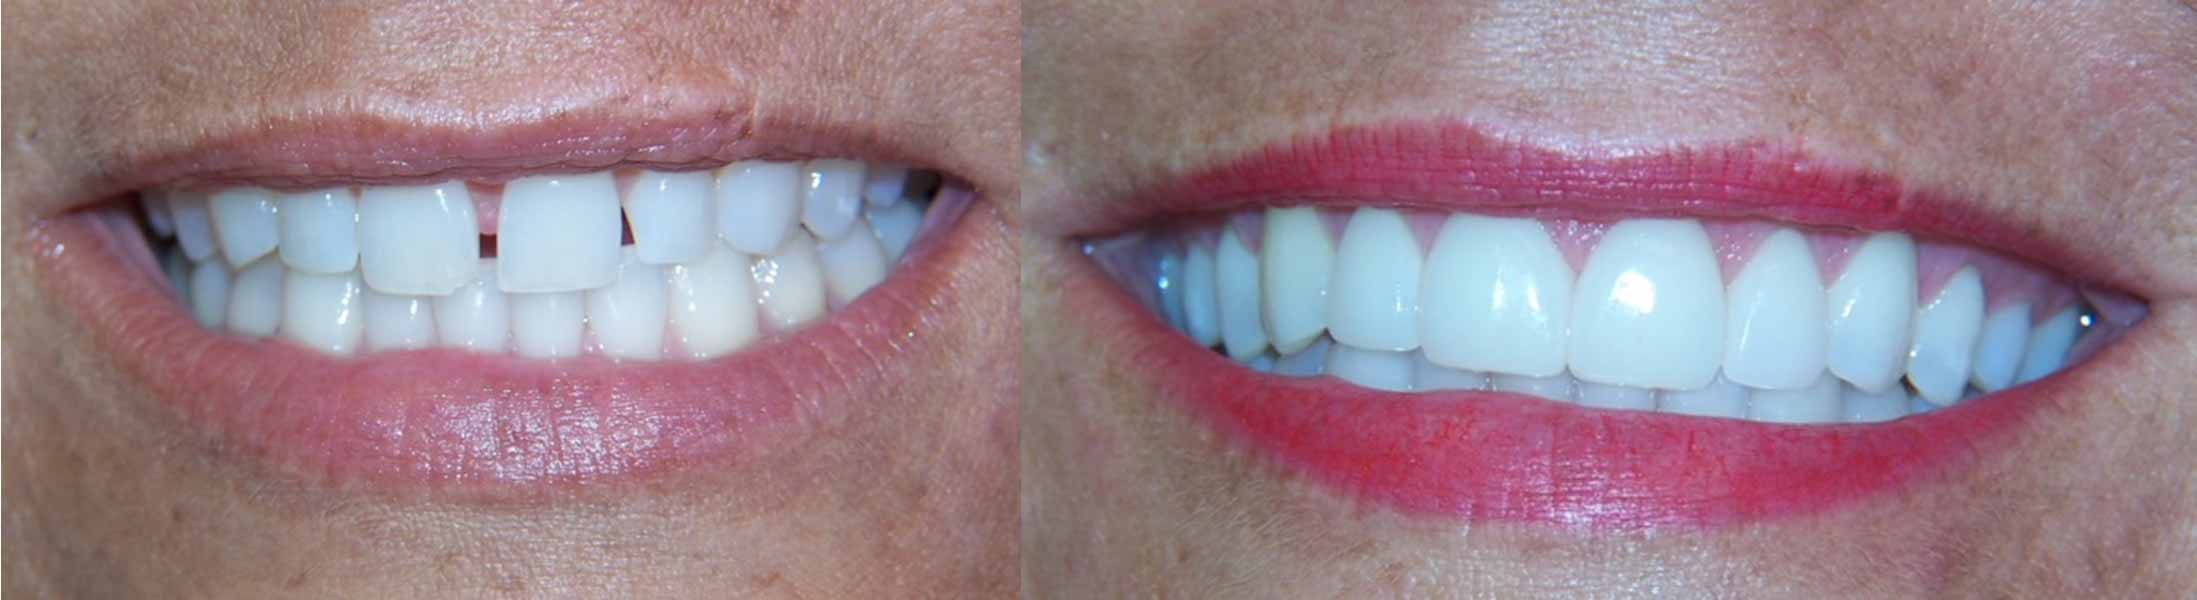 Female patient with new dental veneers